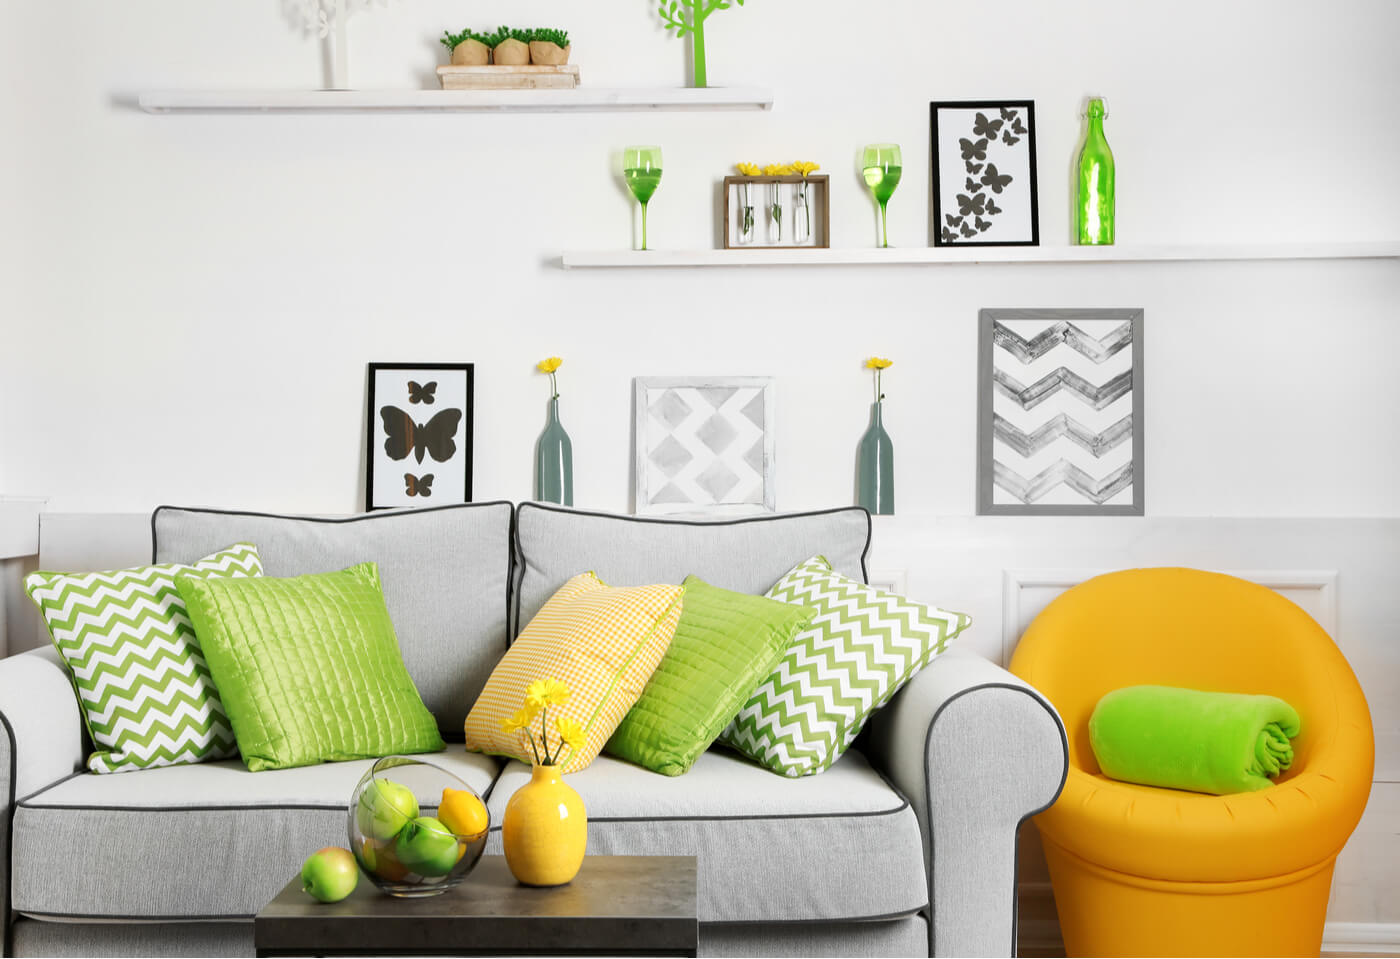 Relación entre el verde y el amarillo para decorar los interiores